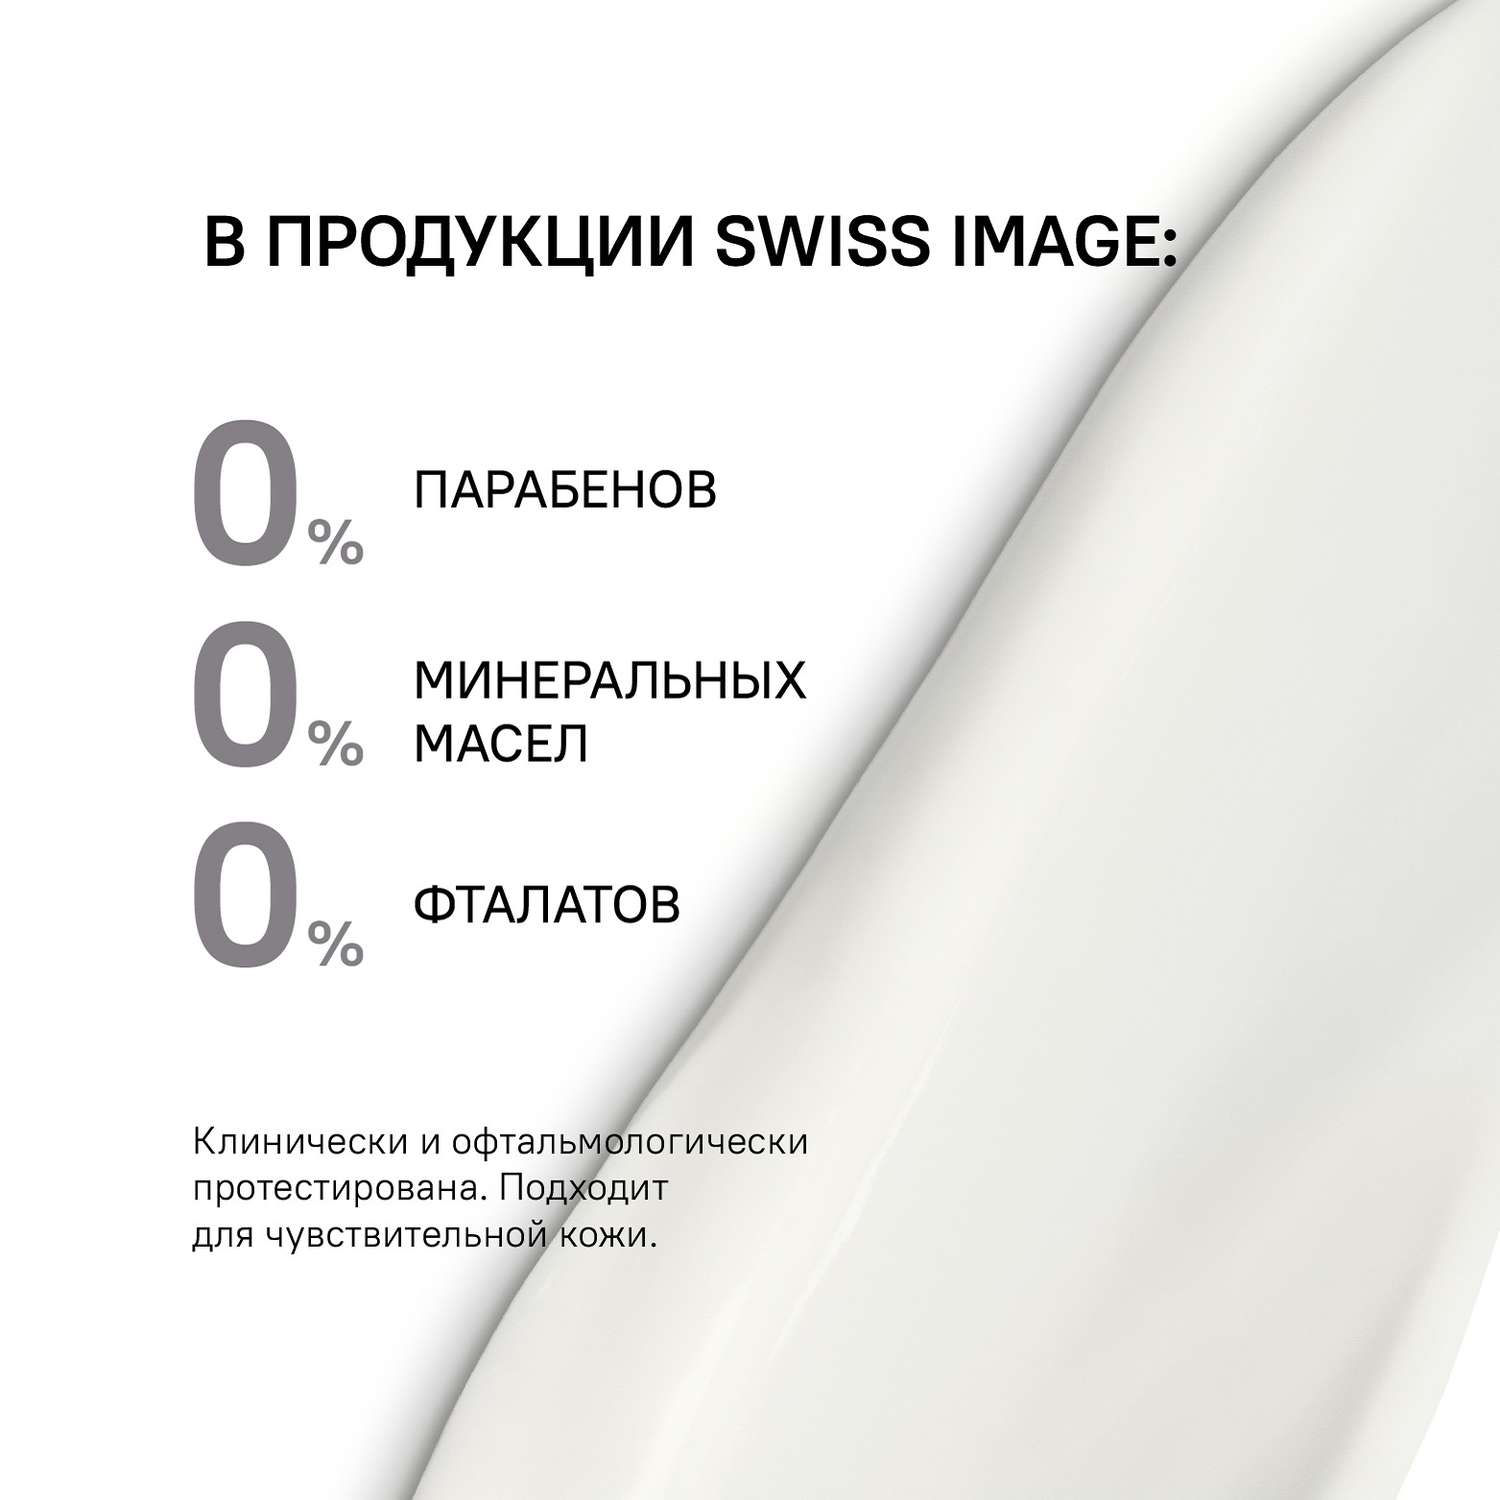 Осветляющая маска Swiss image для лица выравнивающая тон кожи 75 мл - фото 10